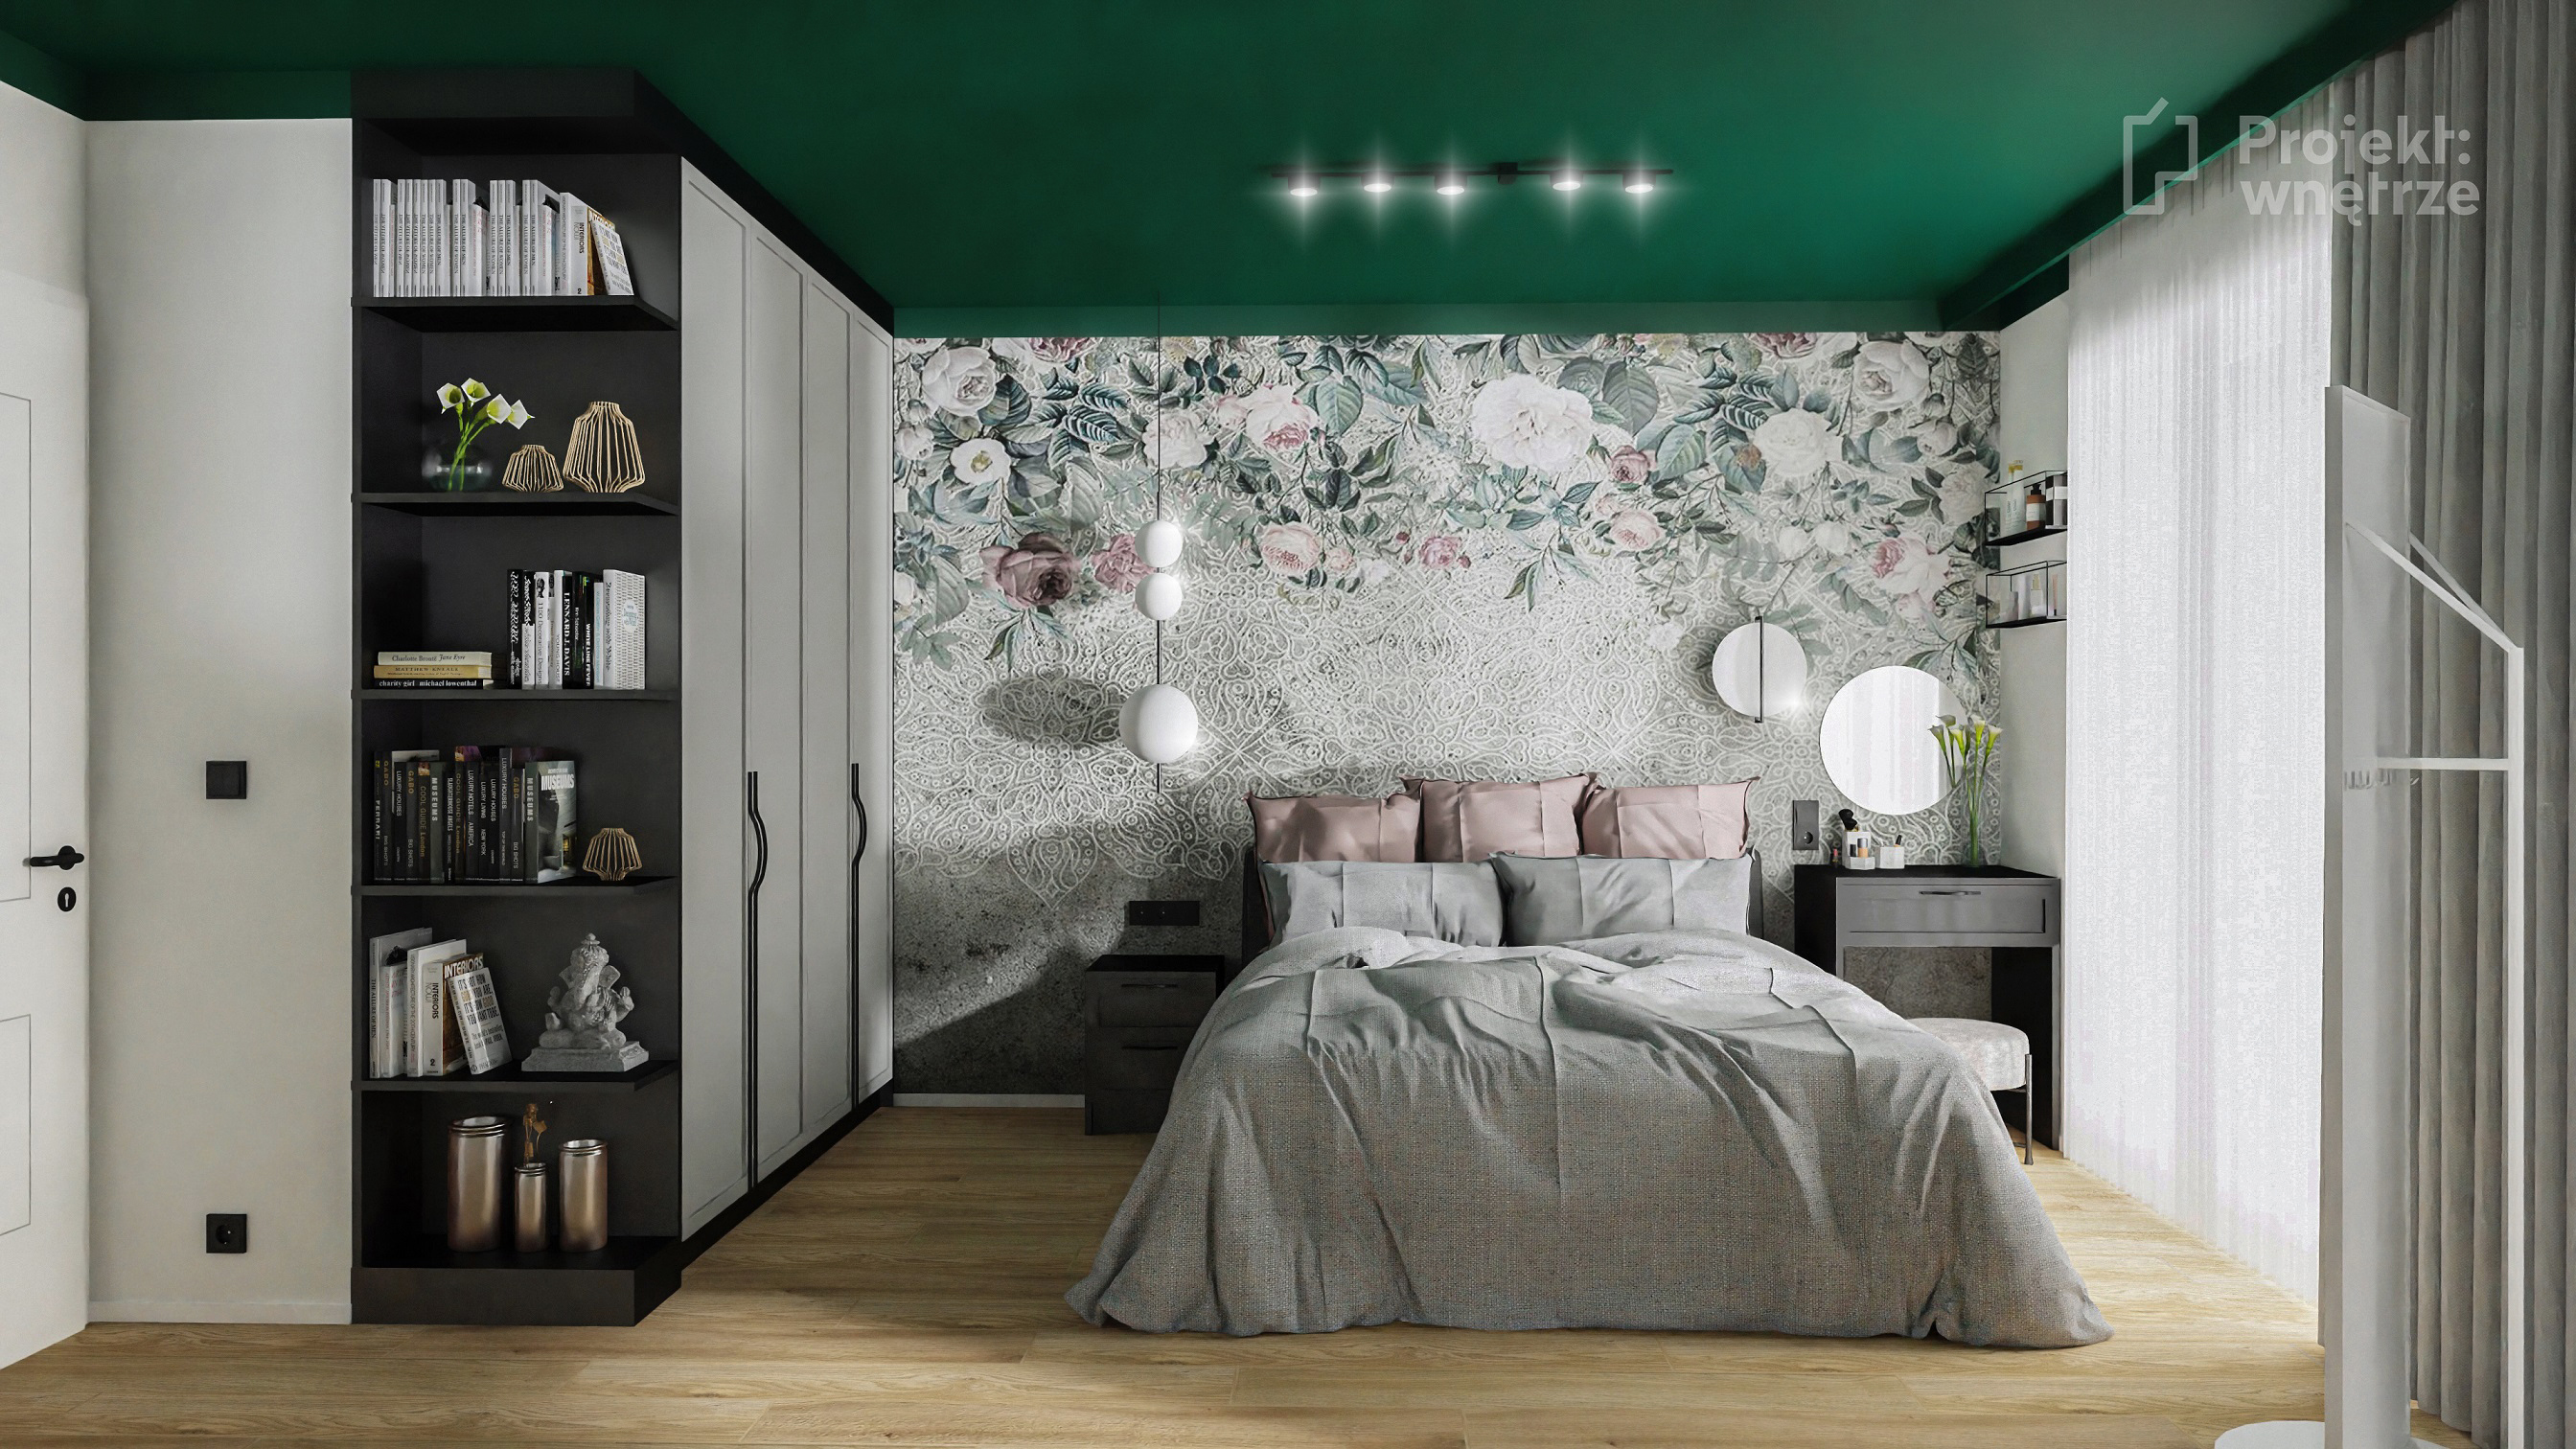 Projekt wnętrze projekt sypialni zieleń szarość drewno czerń tapeta sztukateria toaletka Ikea Zfabryki - projektowanie wnętrz online Warszawa